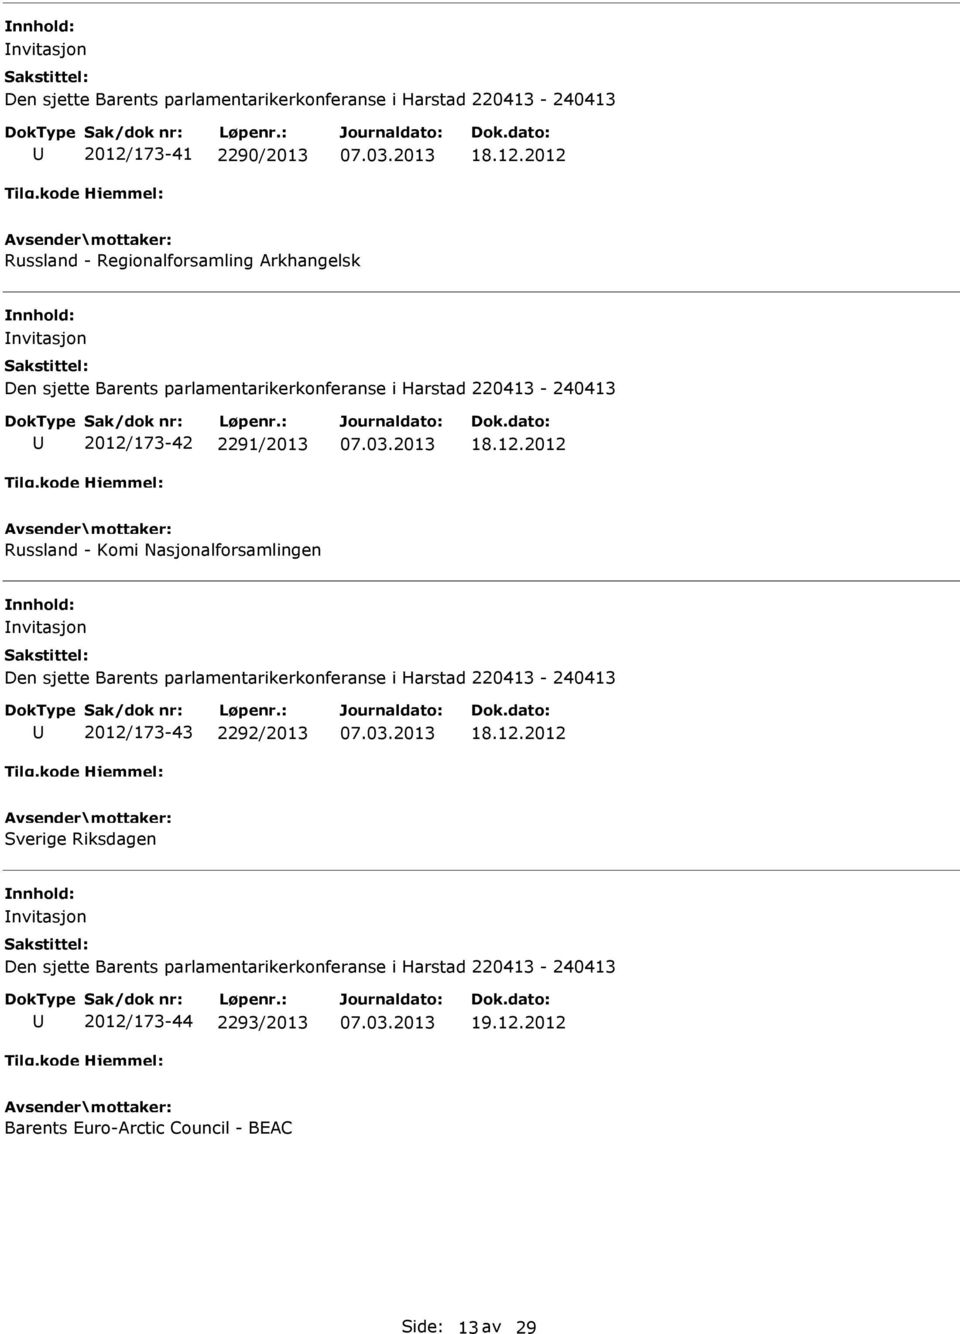 Nasjonalforsamlingen nvitasjon 2012/173-43 2292/2013 Sverige Riksdagen